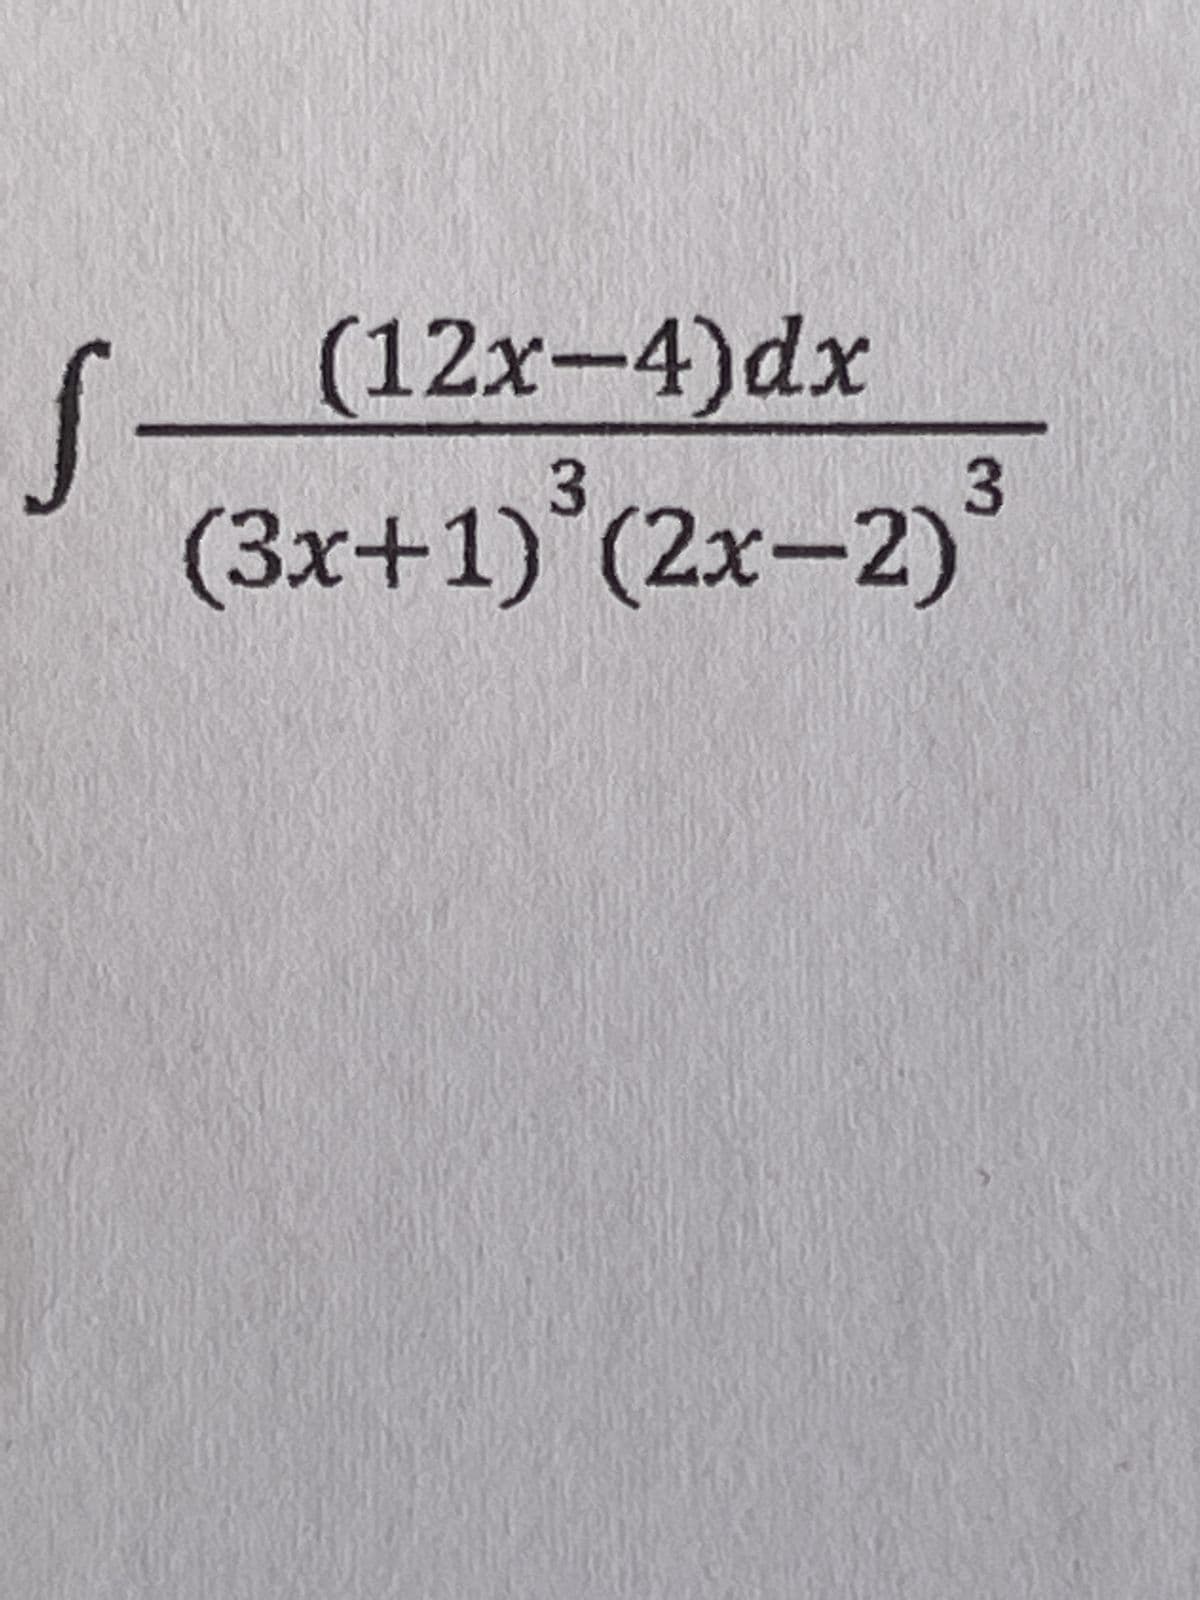 S
(12x-4)dx
3
(3x+1) (2x-2)
3